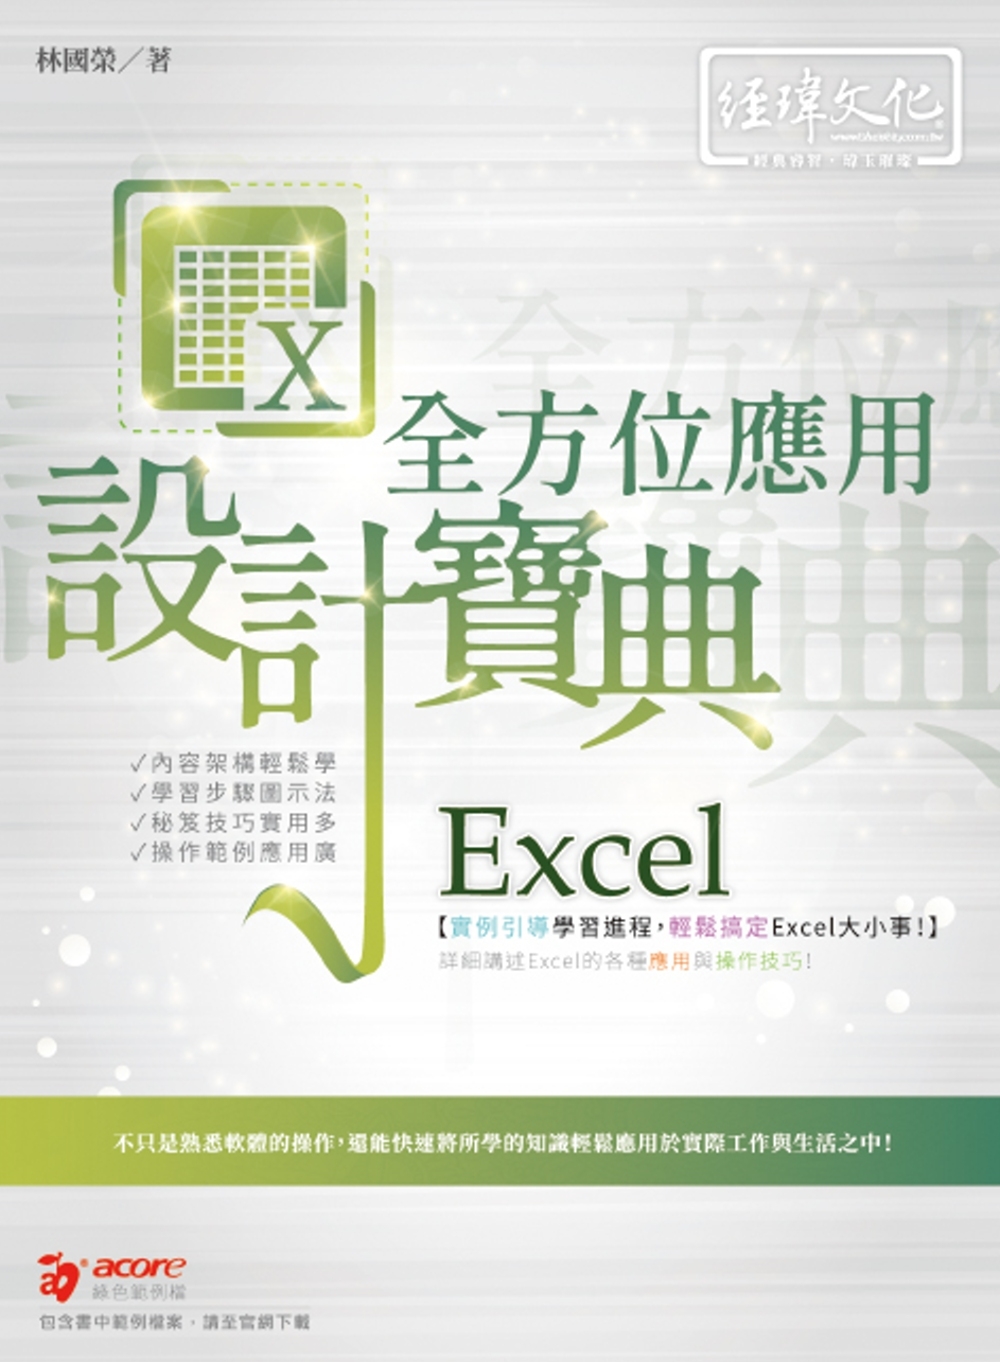 Excel 全方位應用 設計寶典